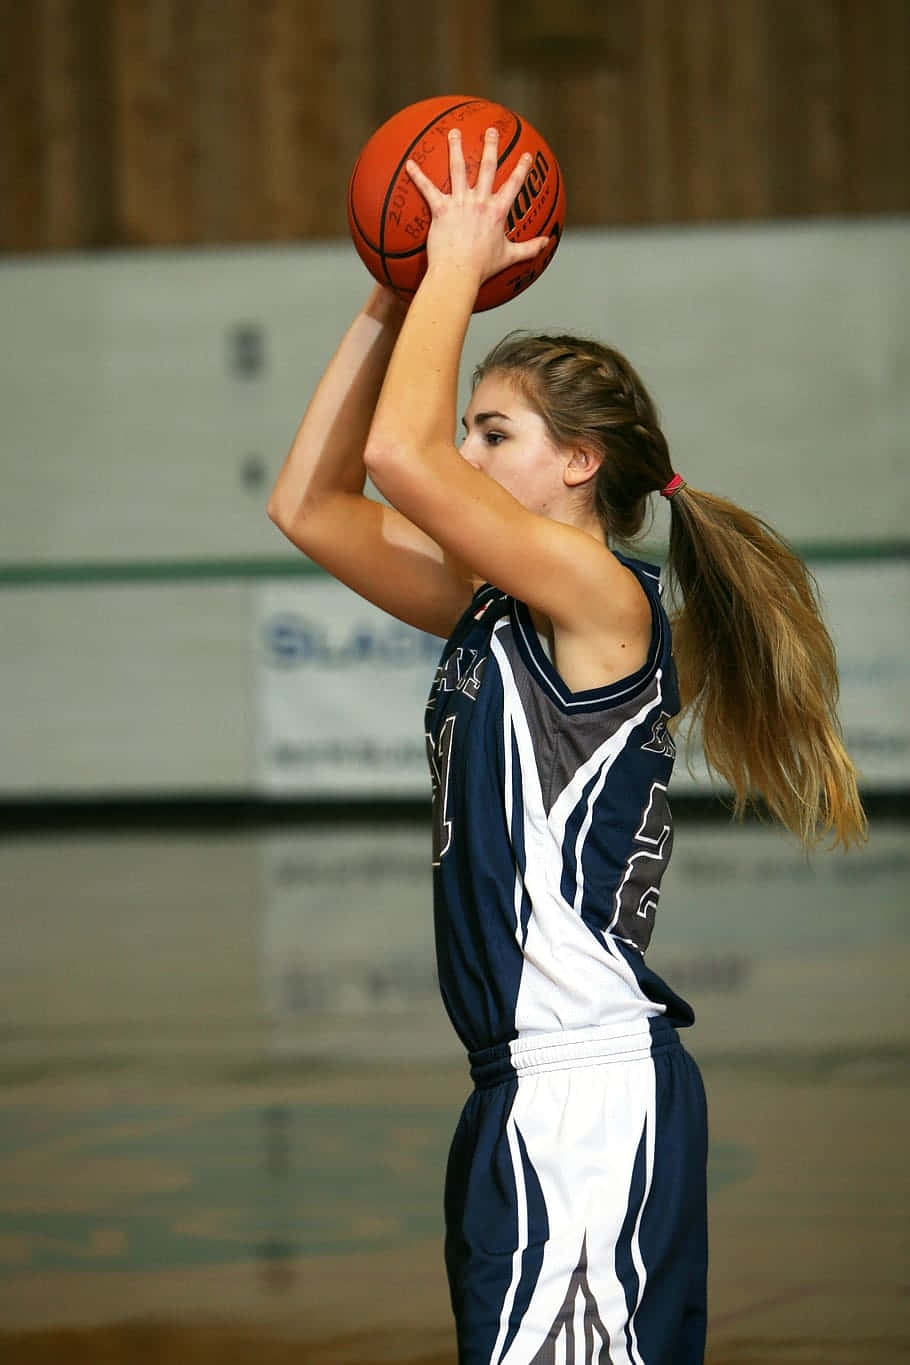 Basketball Girl Preparing Shot.jpg Wallpaper